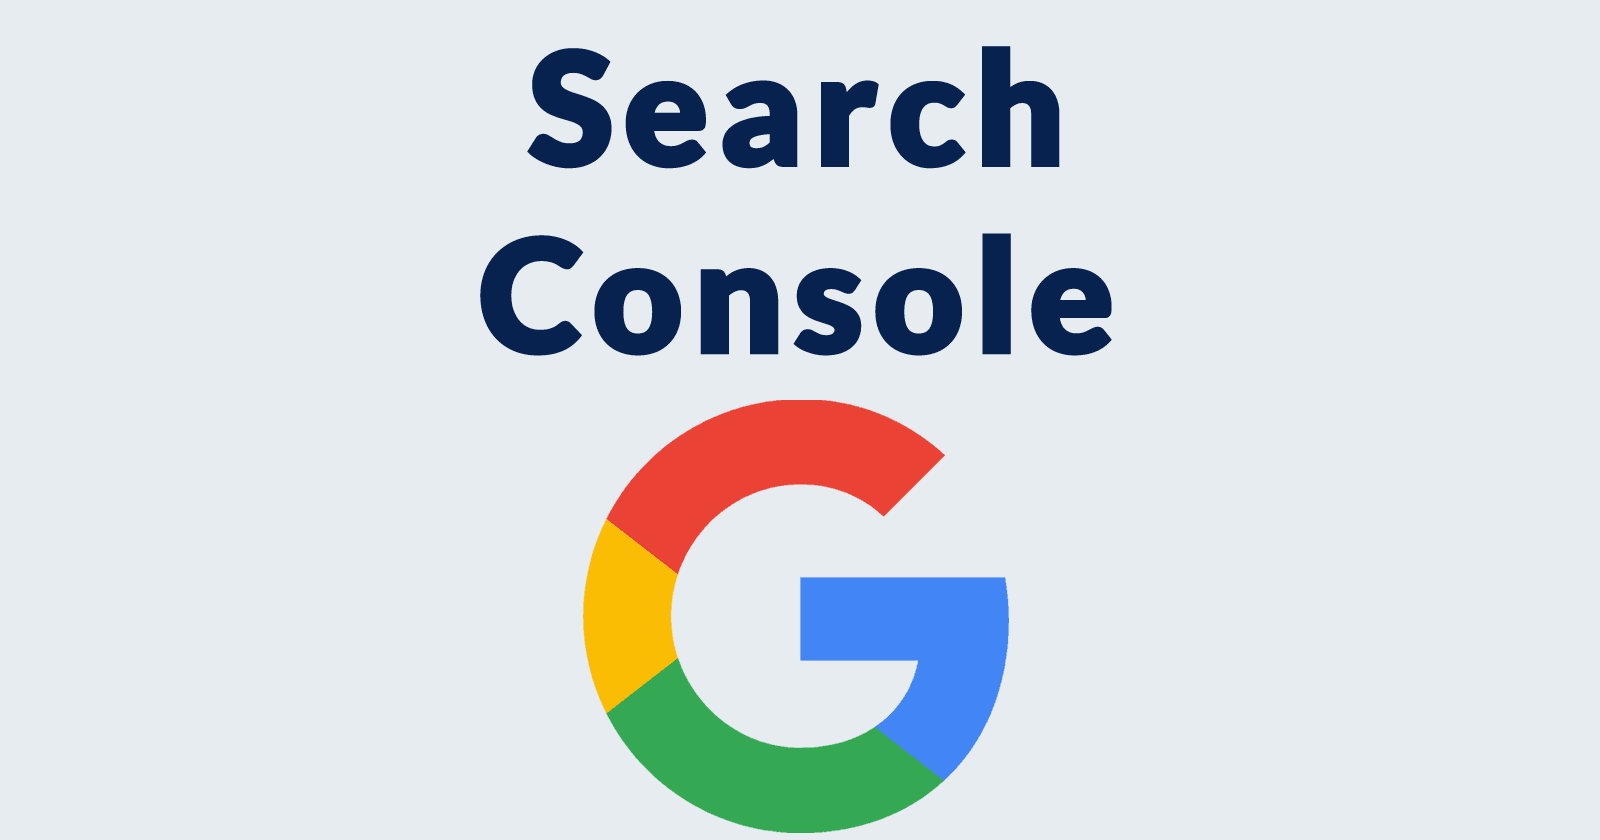 Google search console